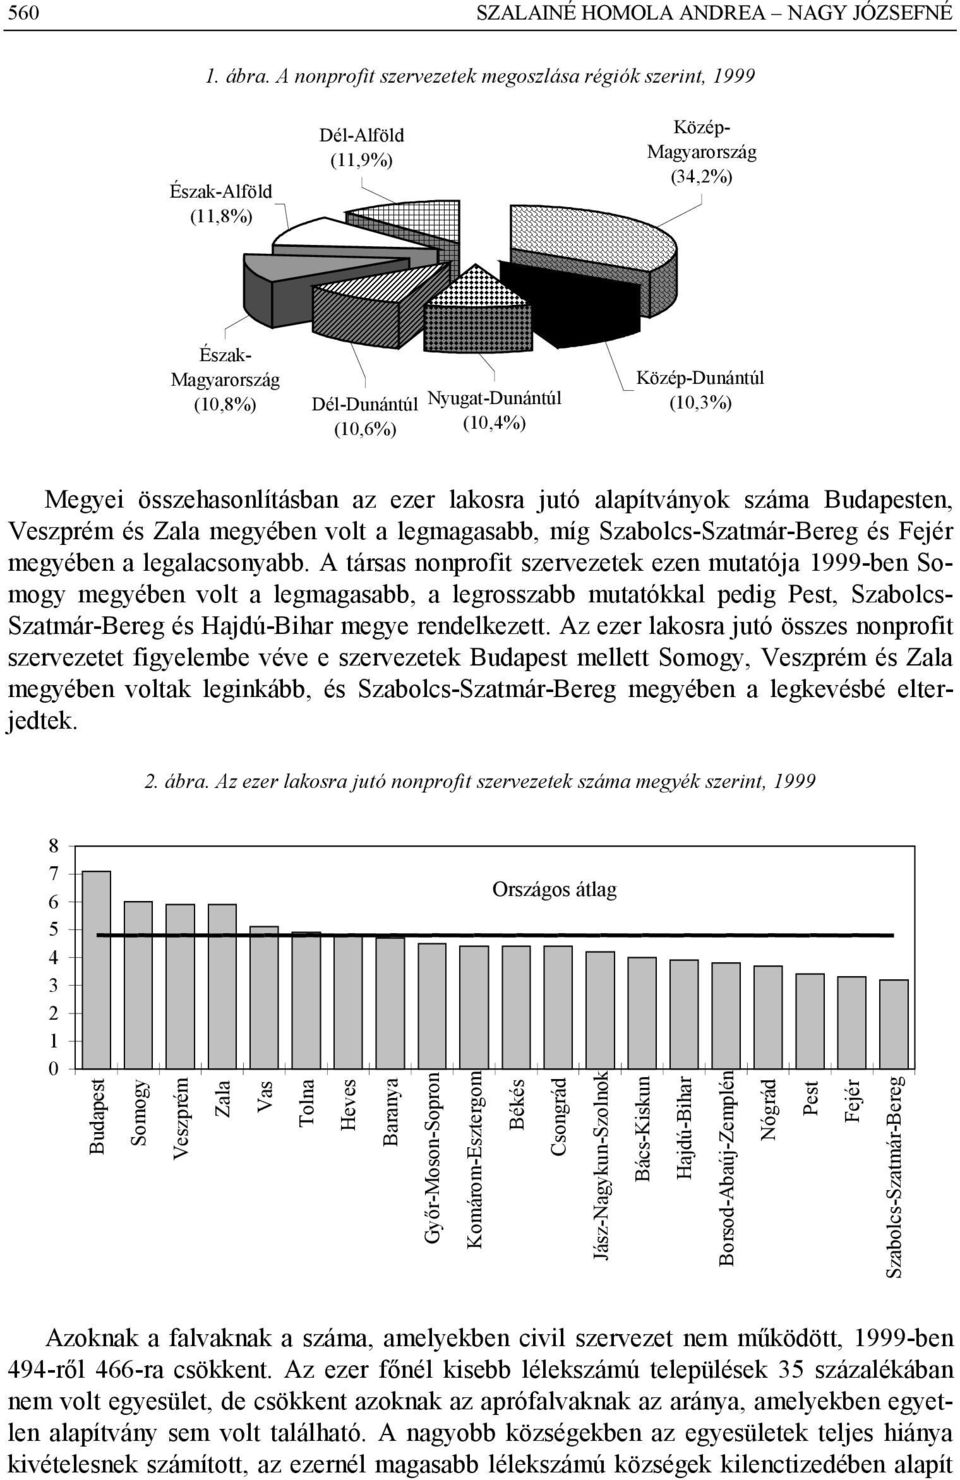 Közép-Dunántúl (10,3%) Megyei összehasonlításban az ezer lakosra jutó alapítványok száma Budapesten, Veszprém és Zala megyében volt a legmagasabb, míg Szabolcs-Szatmár-Bereg és Fejér megyében a